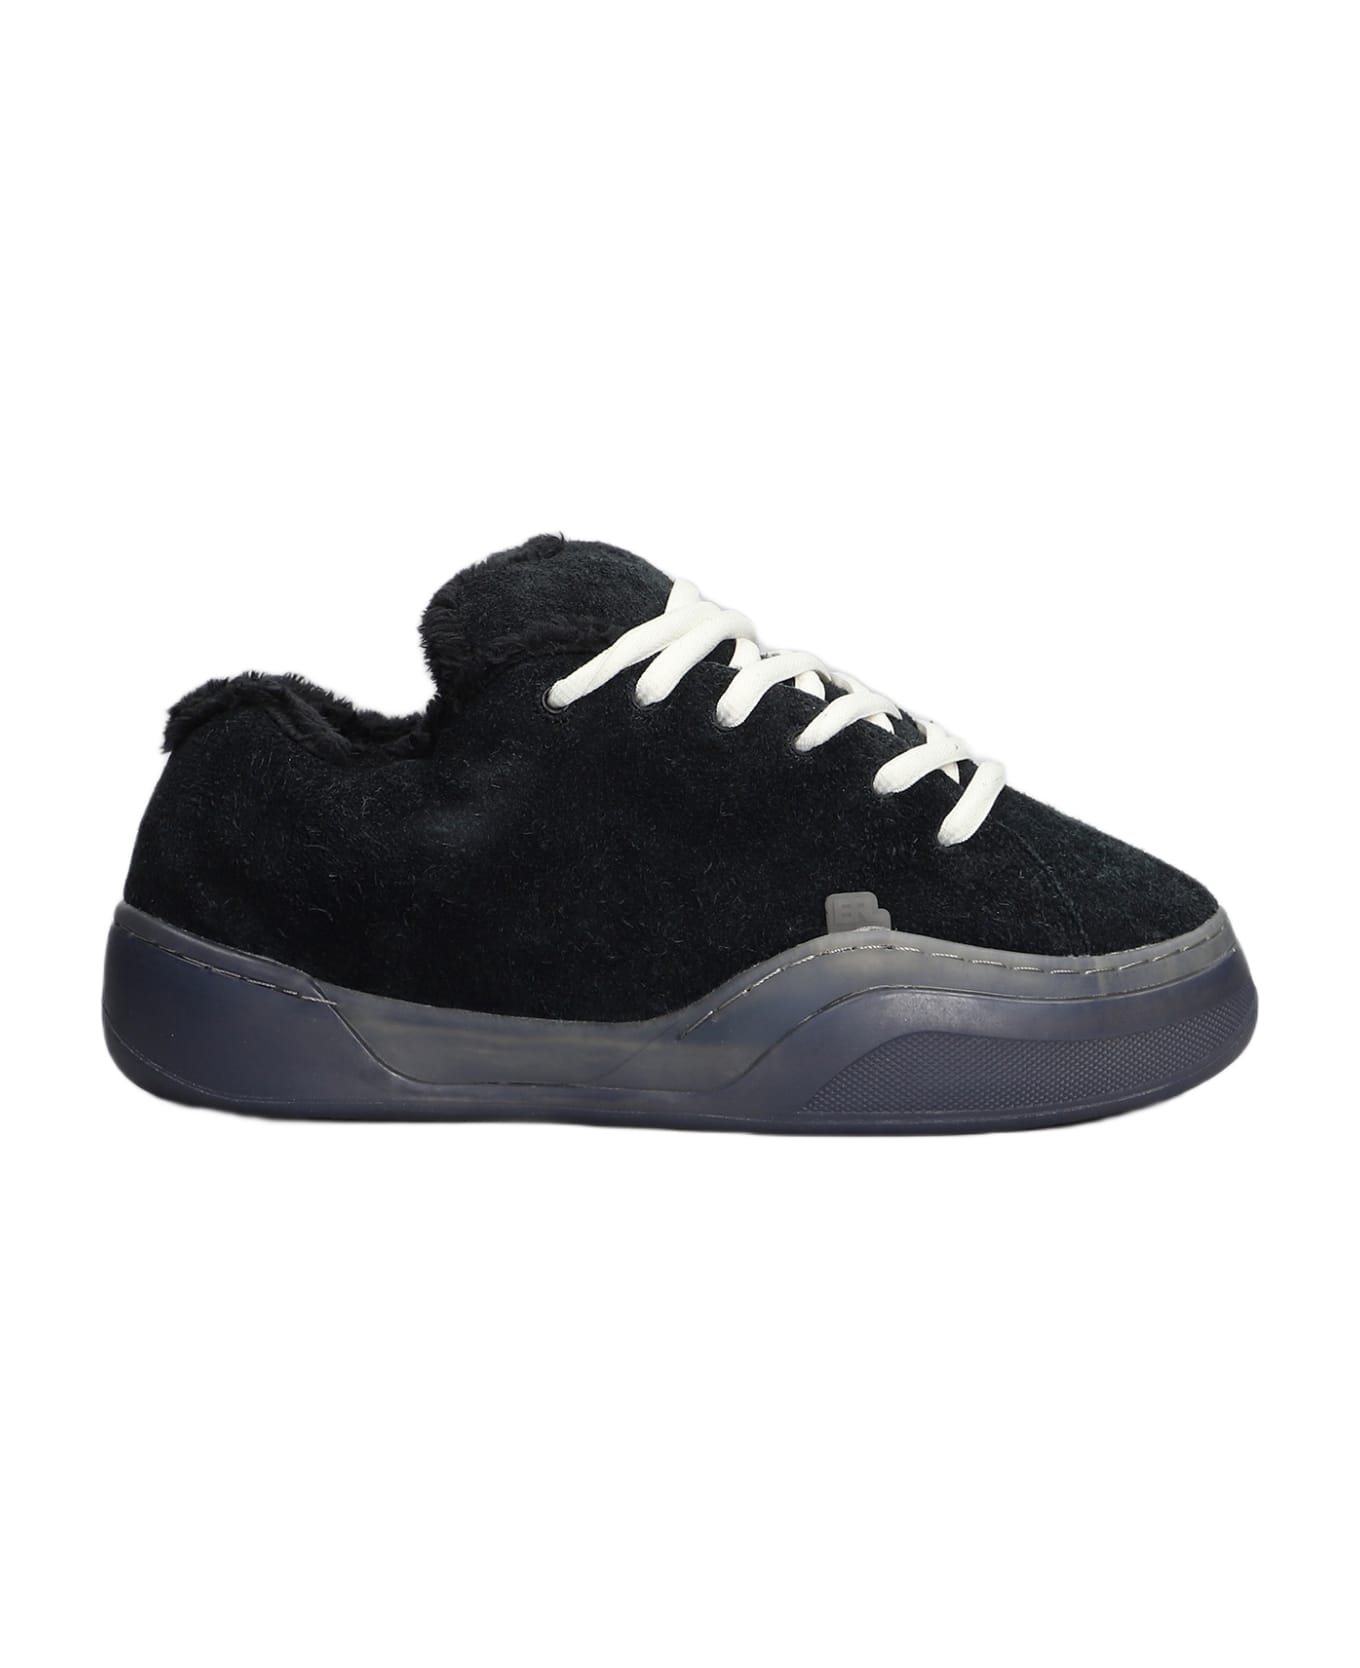 ERL Sneakers In Black Suede - black